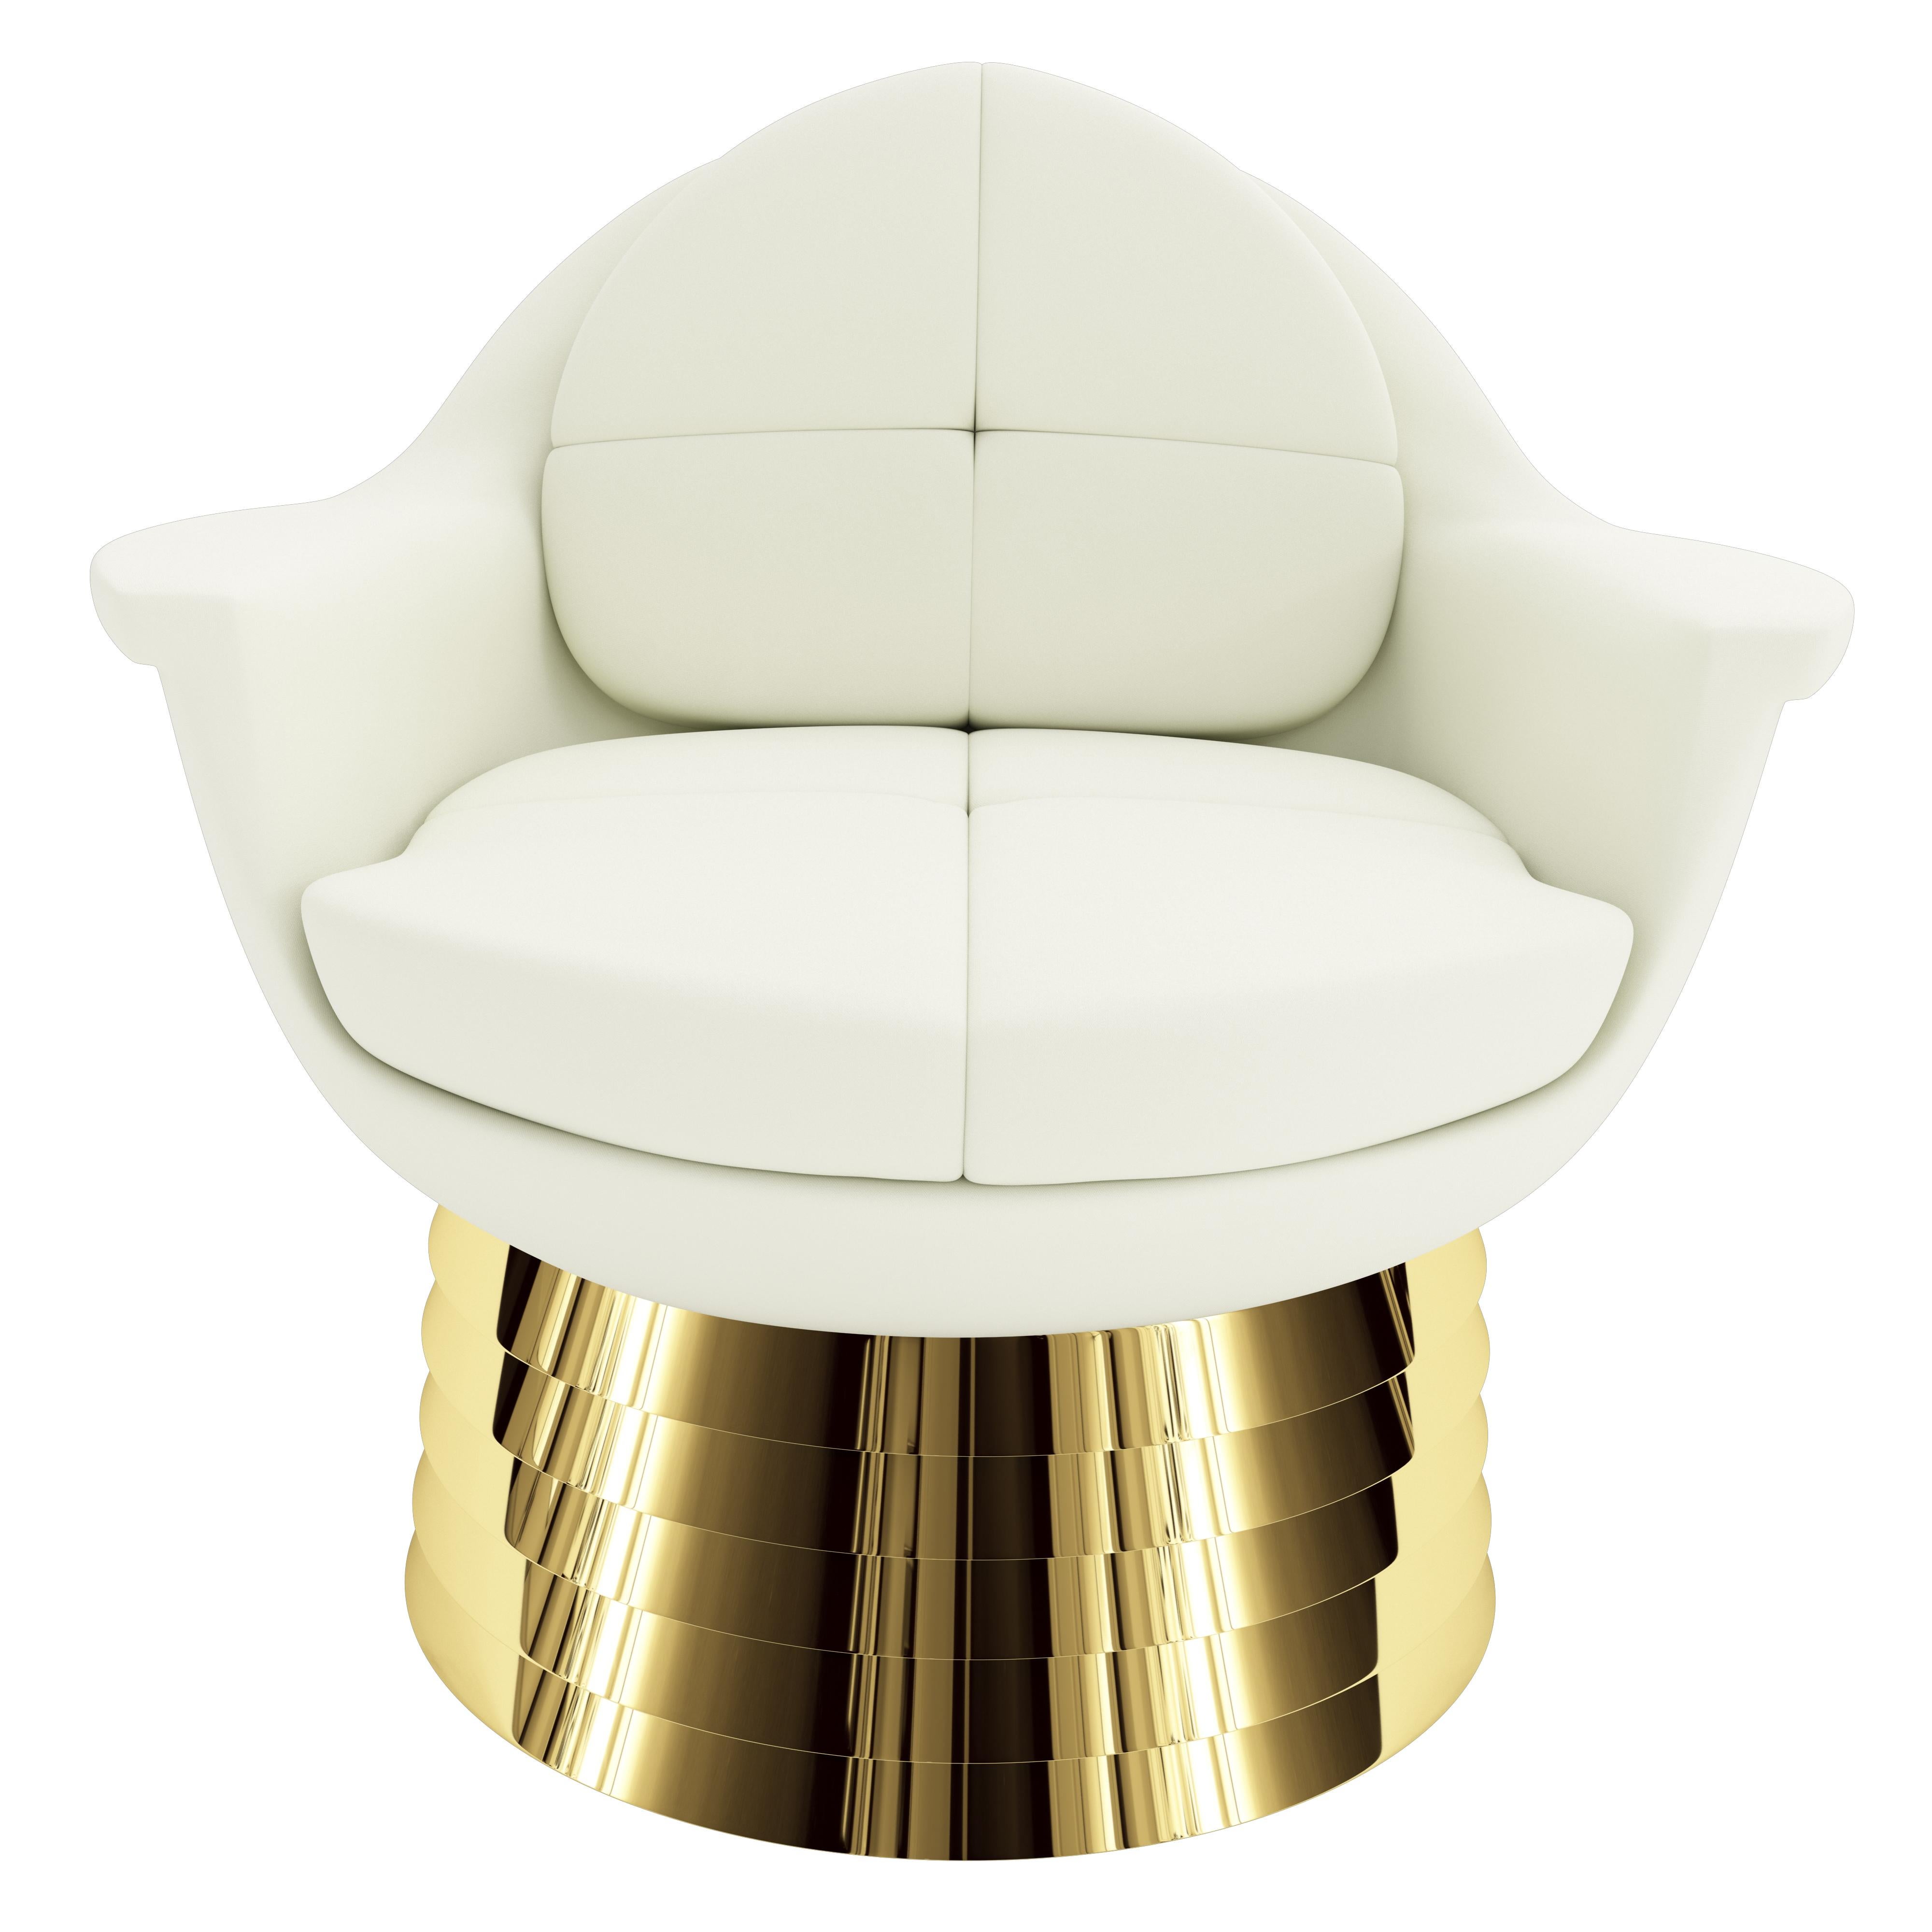 Le fauteuil Iris Lounge a été nommé d'après l'iris de l'œil humain. Lorsque vous regardez le fauteuil de salon de face, les accoudoirs en forme d'aile et la forme ronde reflètent la symétrie de l'œil. La base est faite de laiton poli en quinconce,